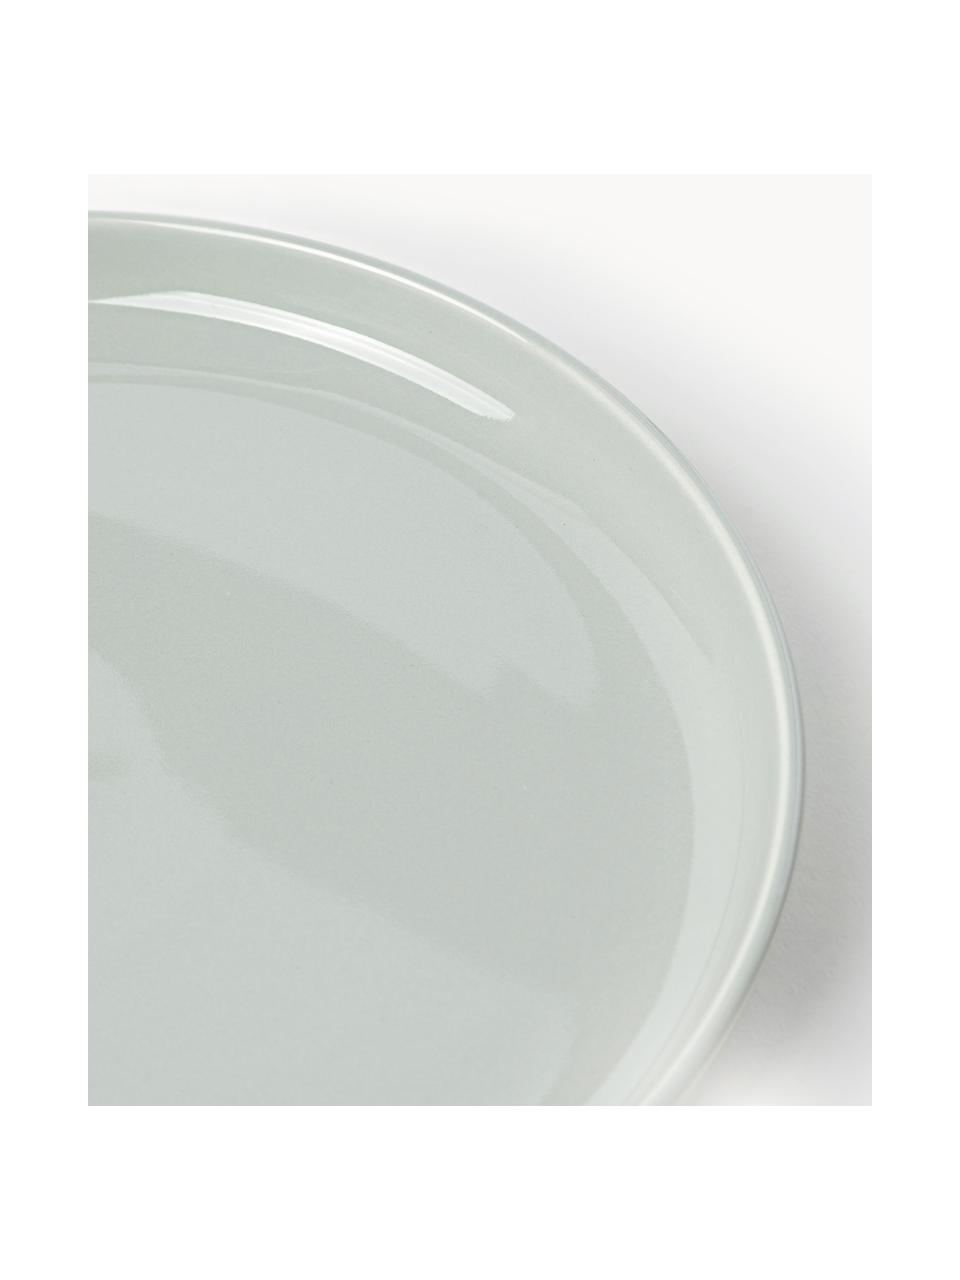 Porseleinen ontbijtborden Nessa, 4 stuks, Hoogwaardig hard porselein, geglazuurd, Lichtgrijs, glanzend, Ø 19 cm